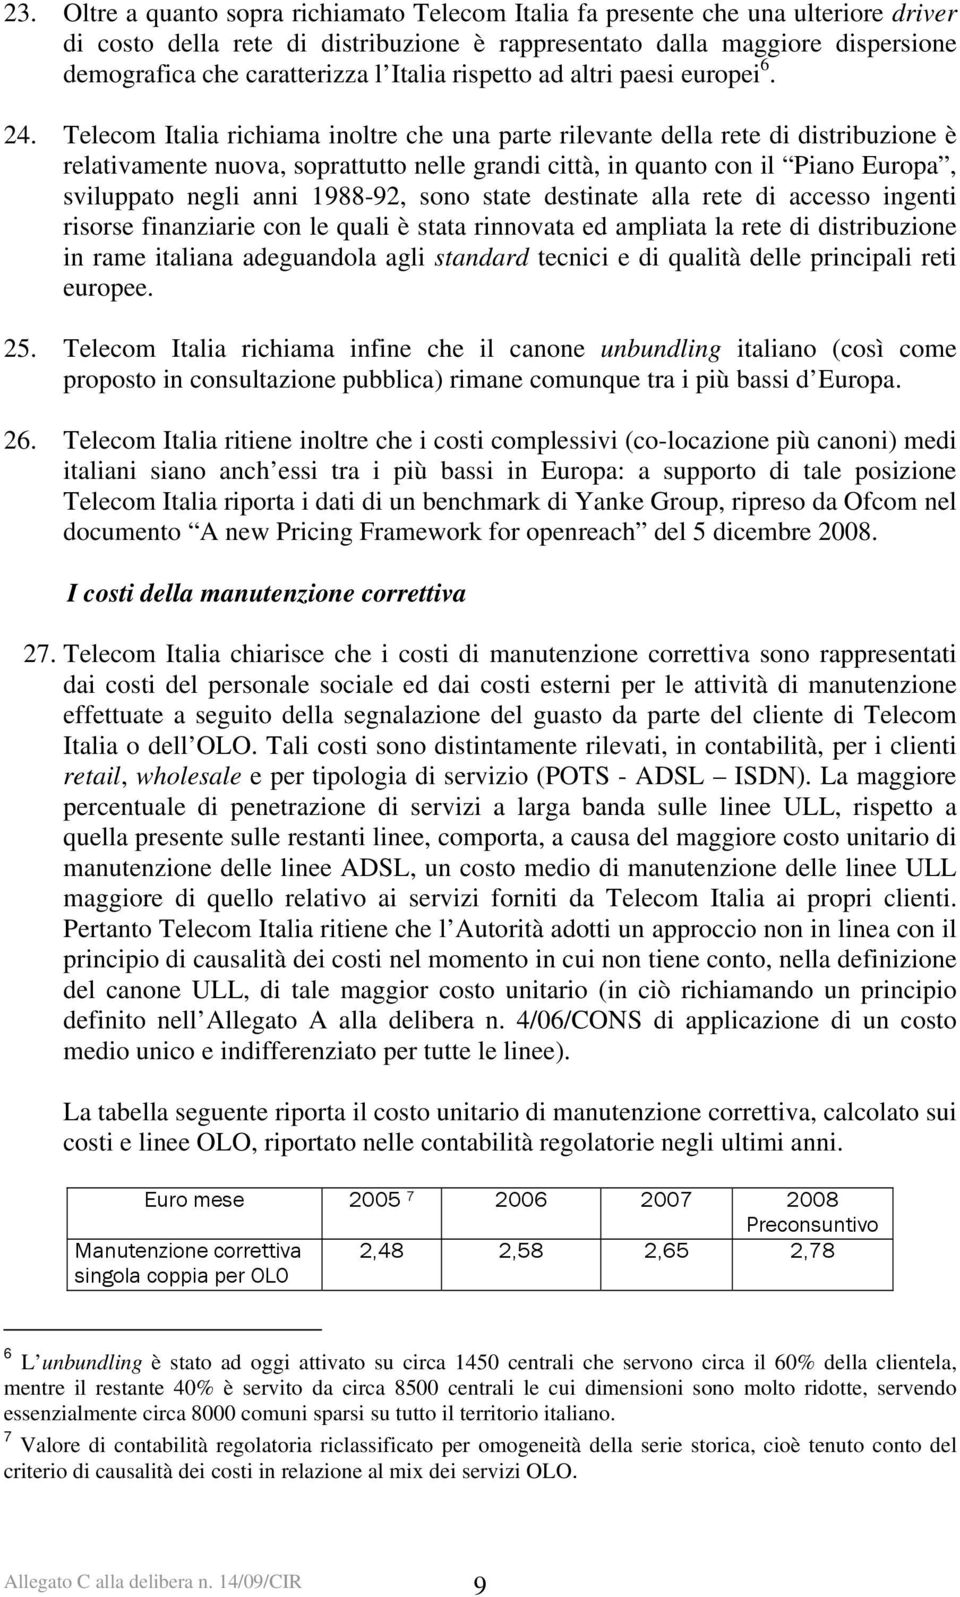 Telecom Italia richiama inoltre che una parte rilevante della rete di distribuzione è relativamente nuova, soprattutto nelle grandi città, in quanto con il Piano Europa, sviluppato negli anni